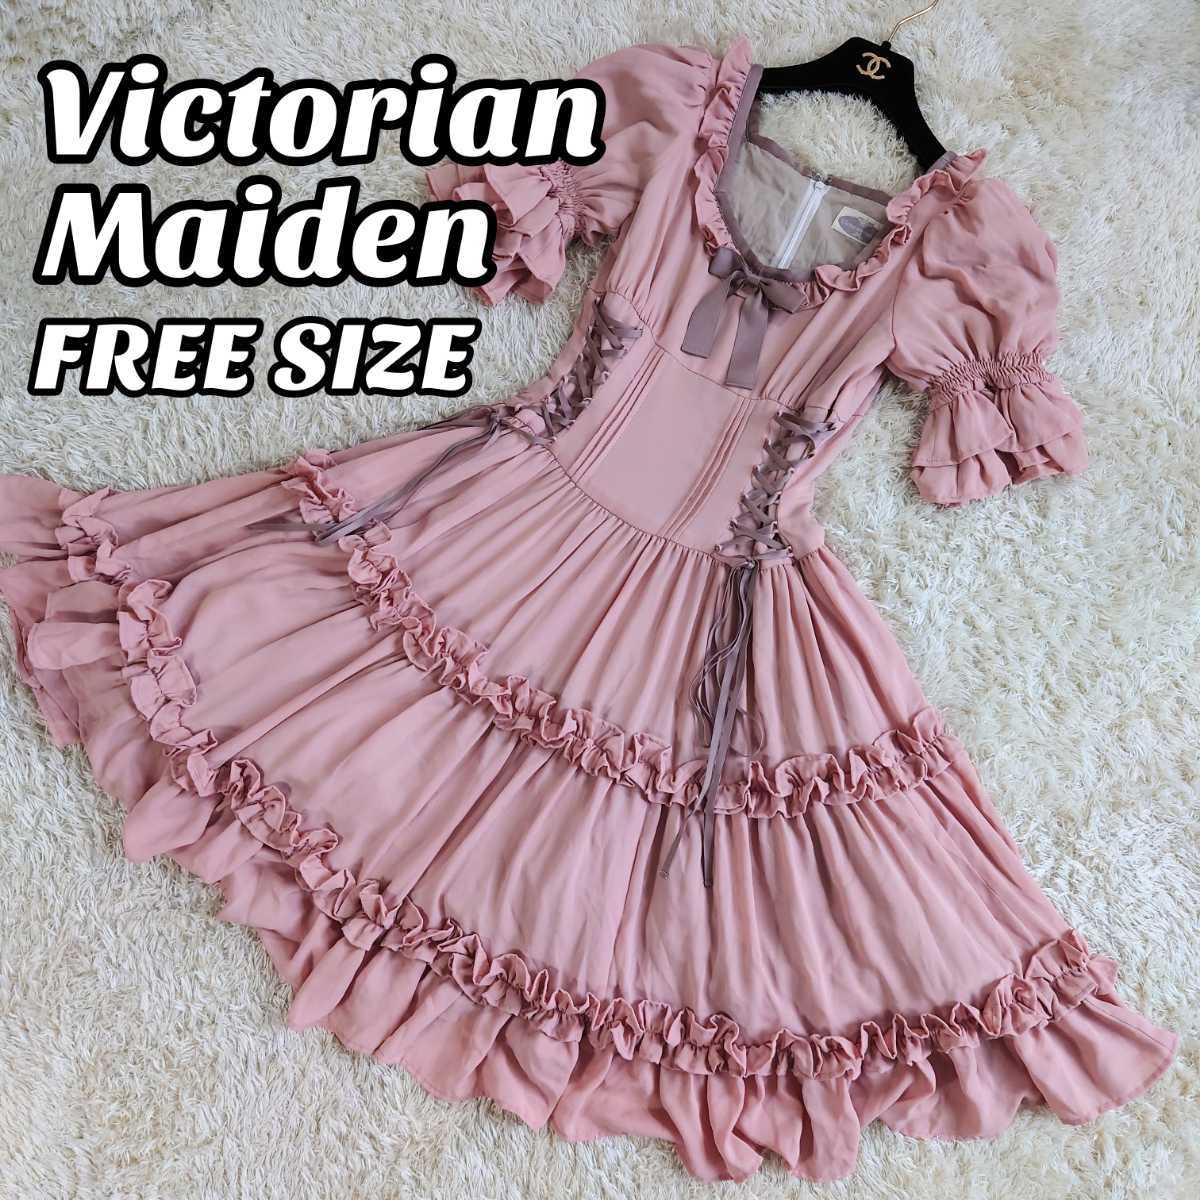 Victorian Maiden クラシックロリータドレス ヴィクトリアンメイデン コルセット リボン ギャザー ベージュピンク フリーサイズ_画像1